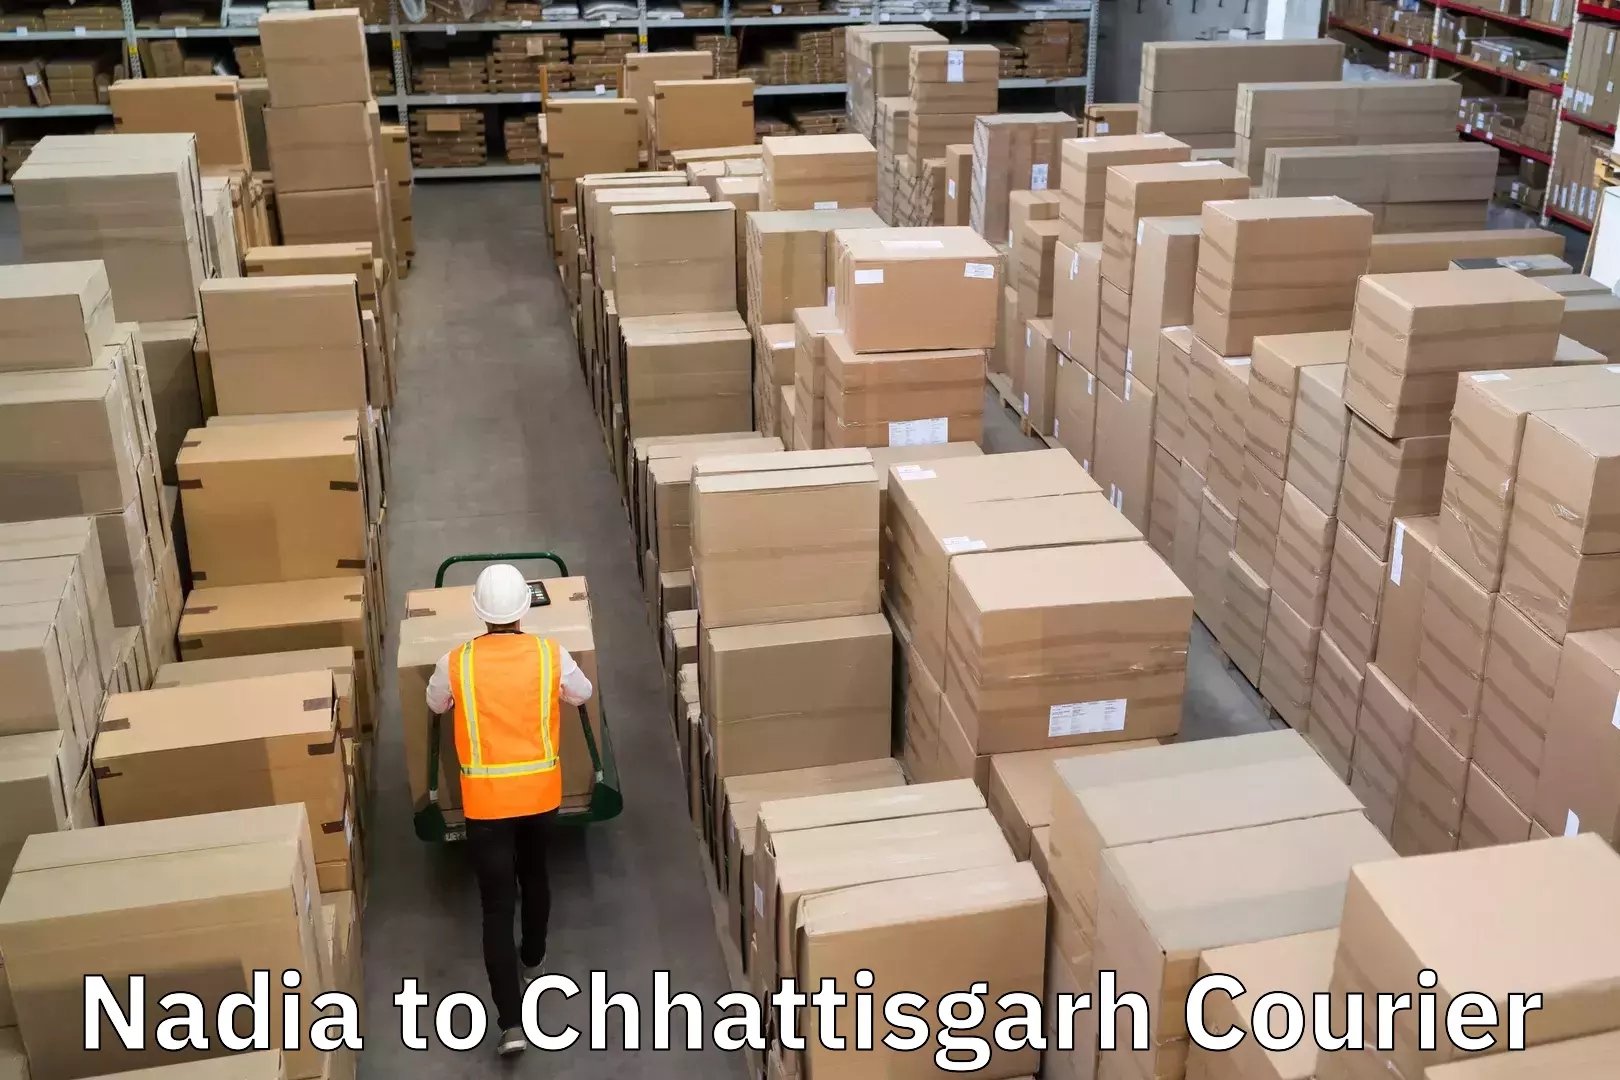 Courier rate comparison Nadia to Chhattisgarh